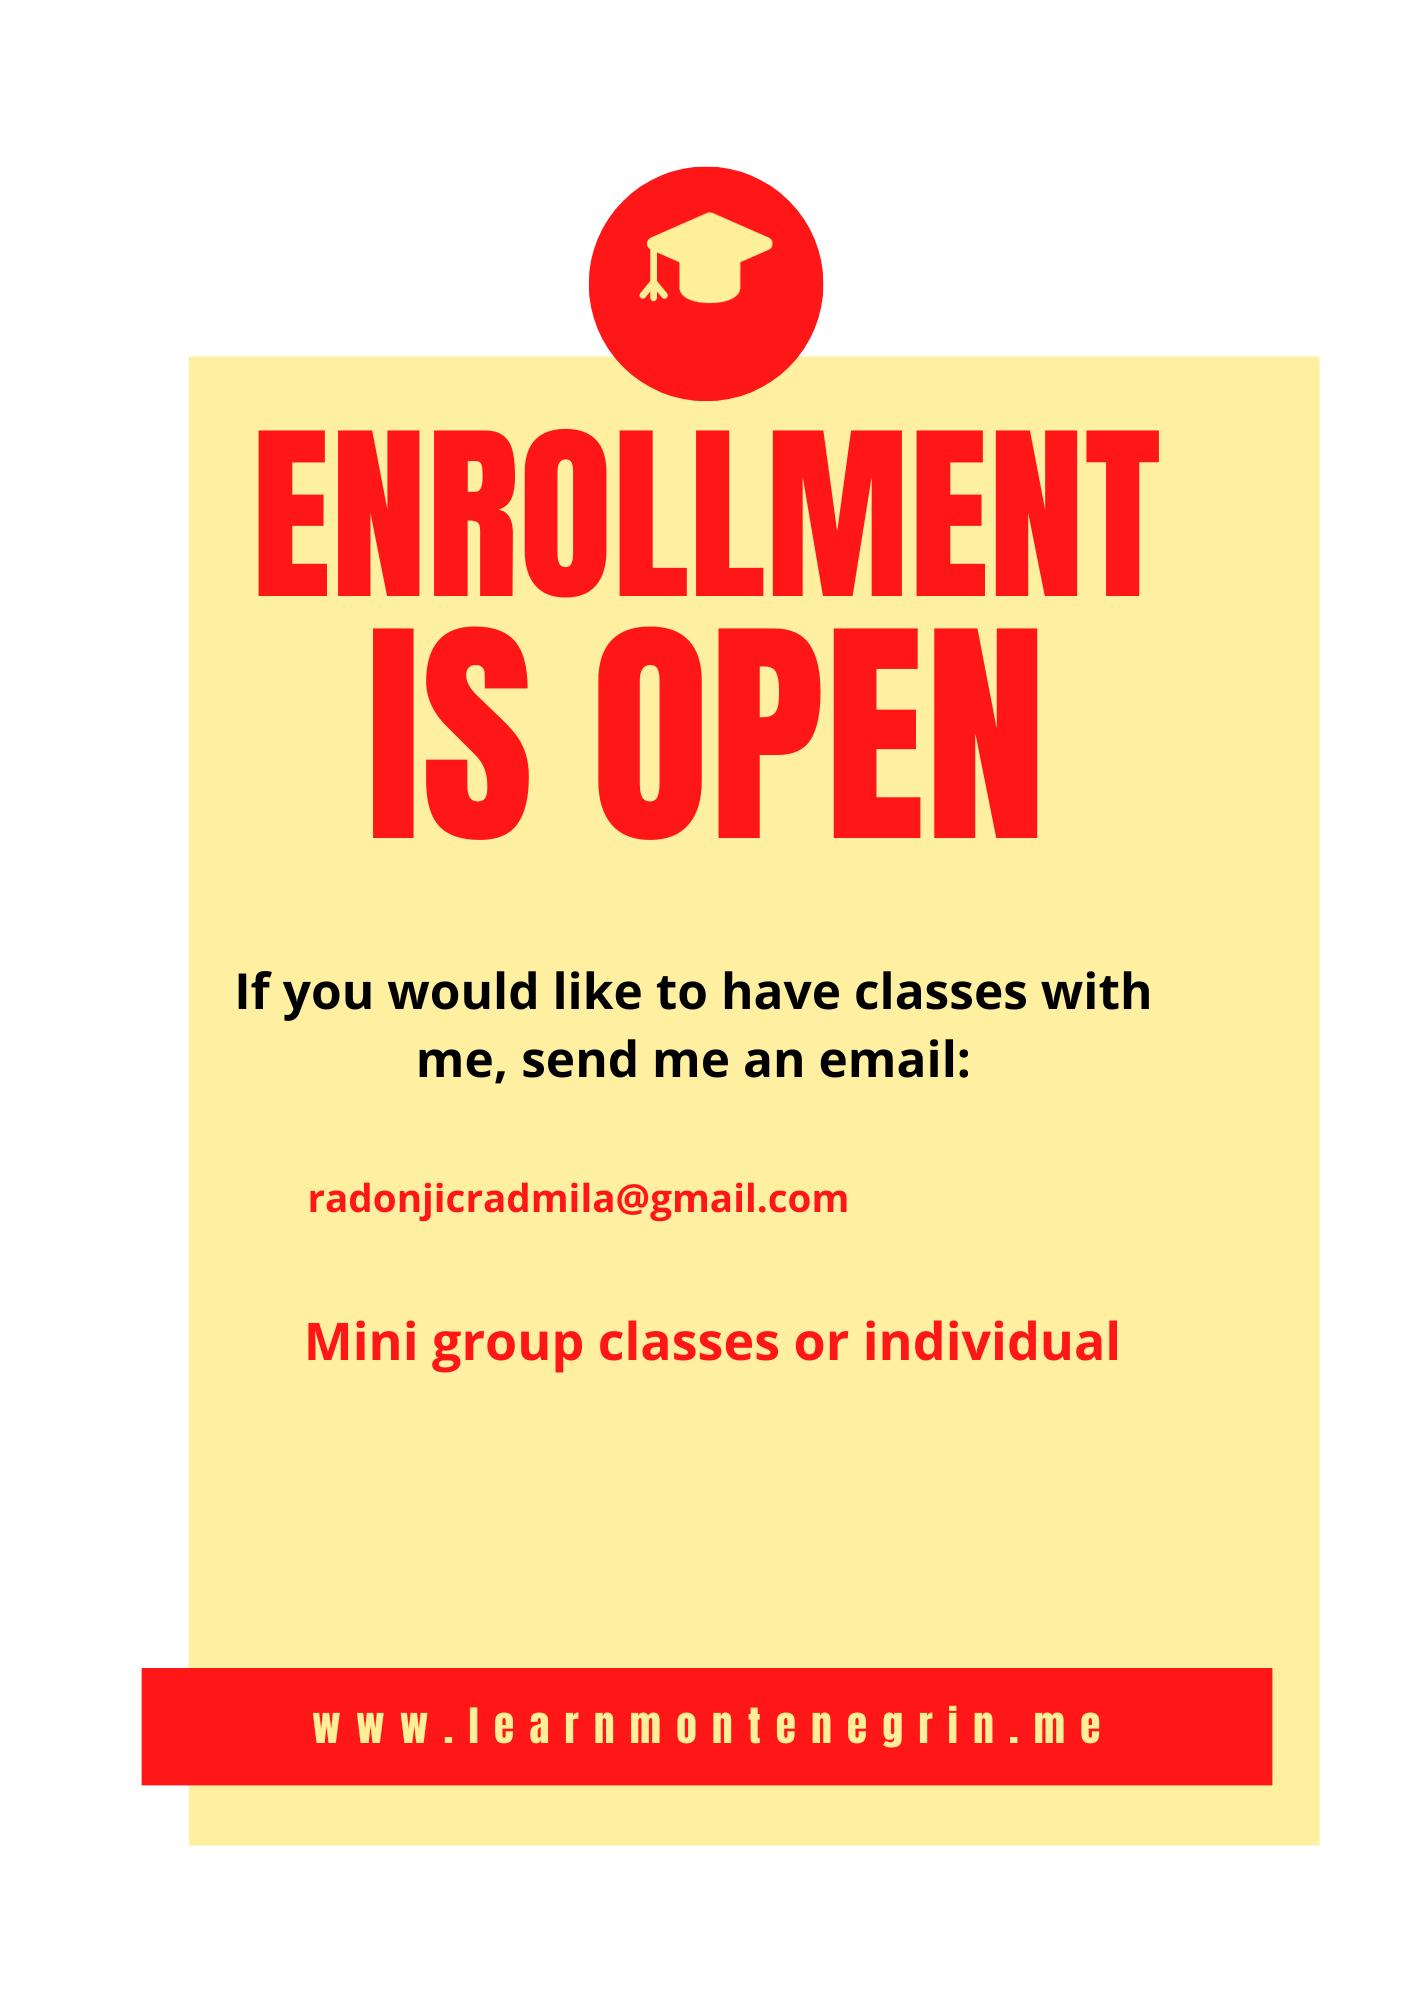 Enrollment open